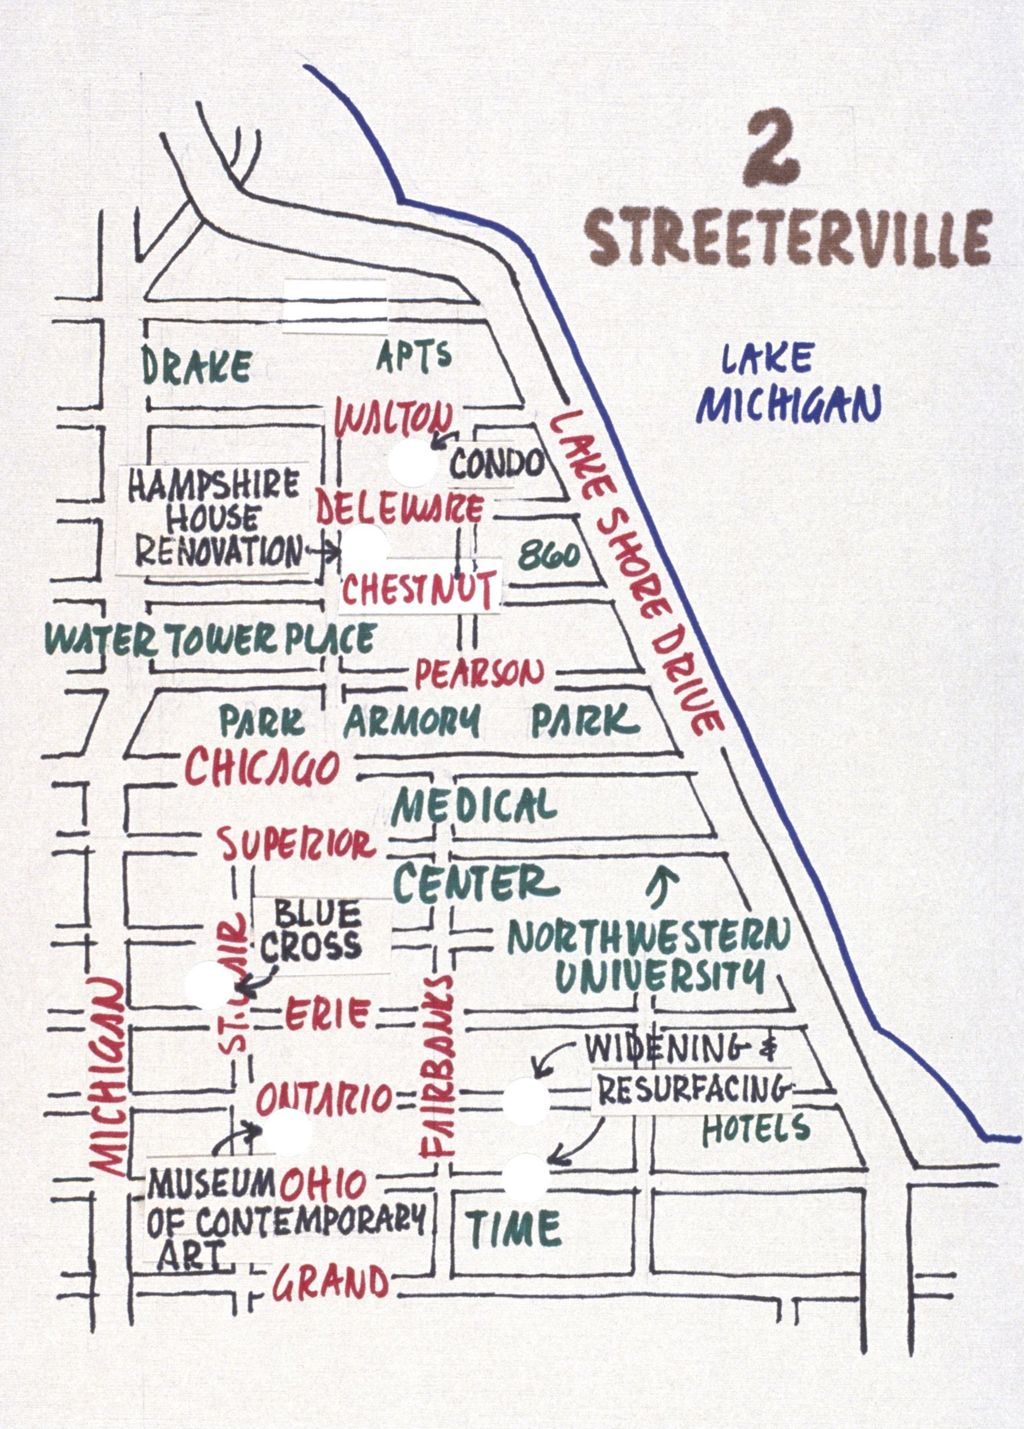 Miniature of Streeterville development map